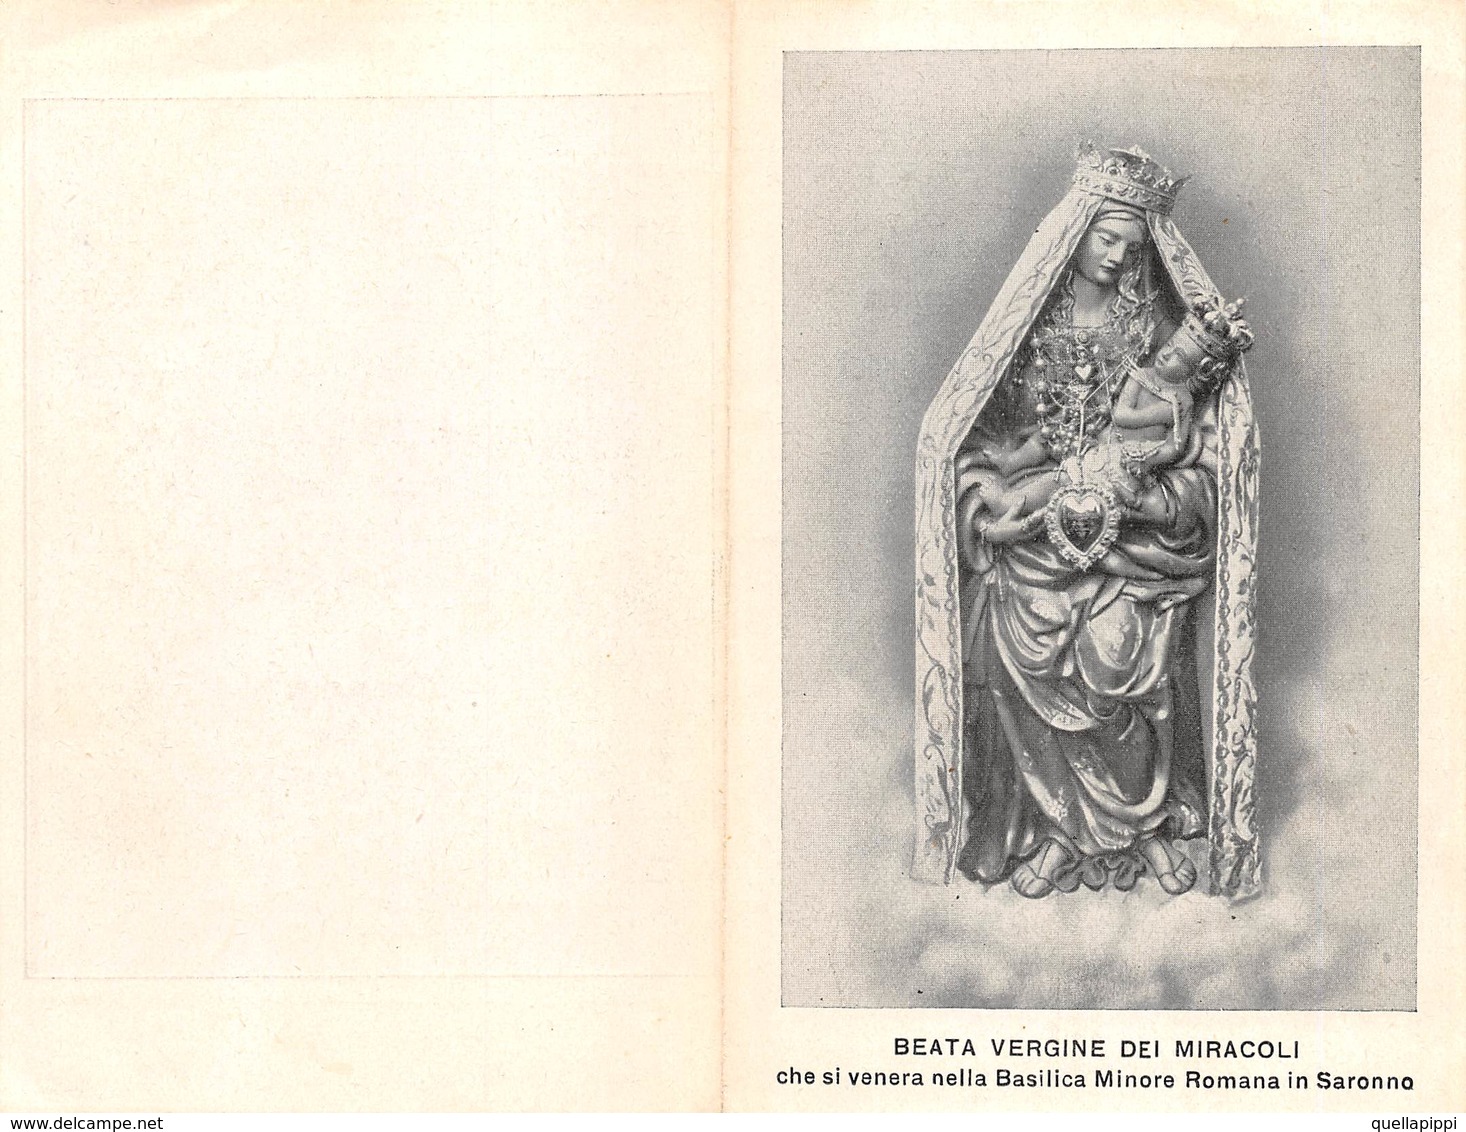 08039 "(VARESE) SARONNO - BEATA VERGINE DEI MIRACOLI" 1923-FOTO PREV. PARR. MONS. CARLO CROCI. PIEGHEVOLE ORIG. - Religione & Esoterismo